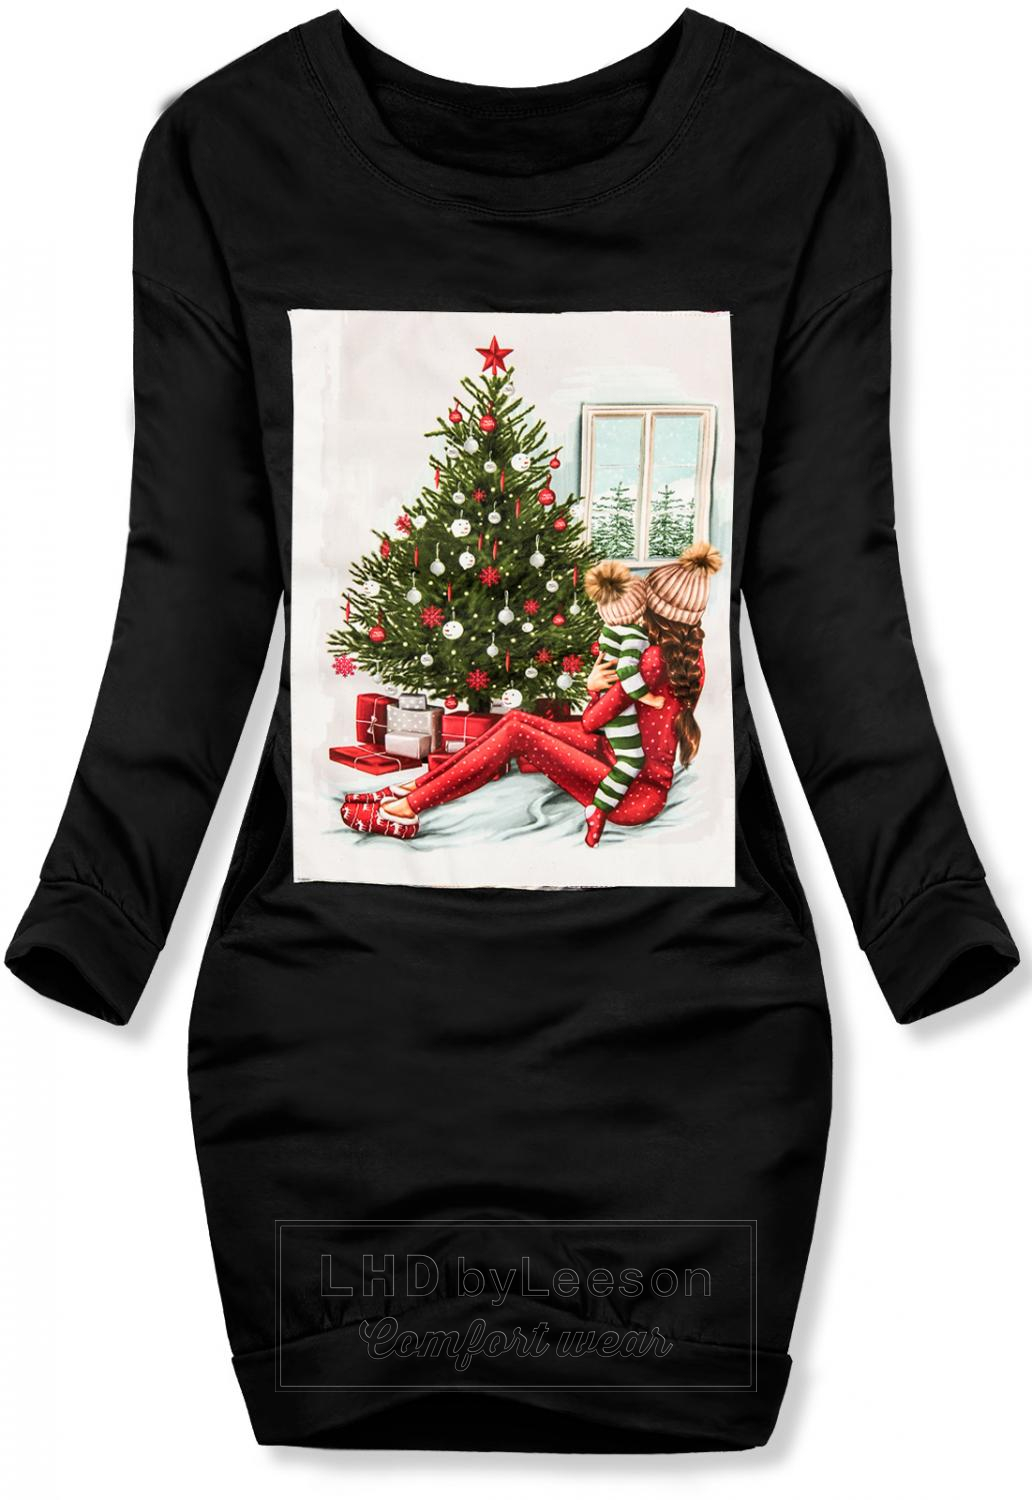 Czarna sukienka ze świątecznym motywem